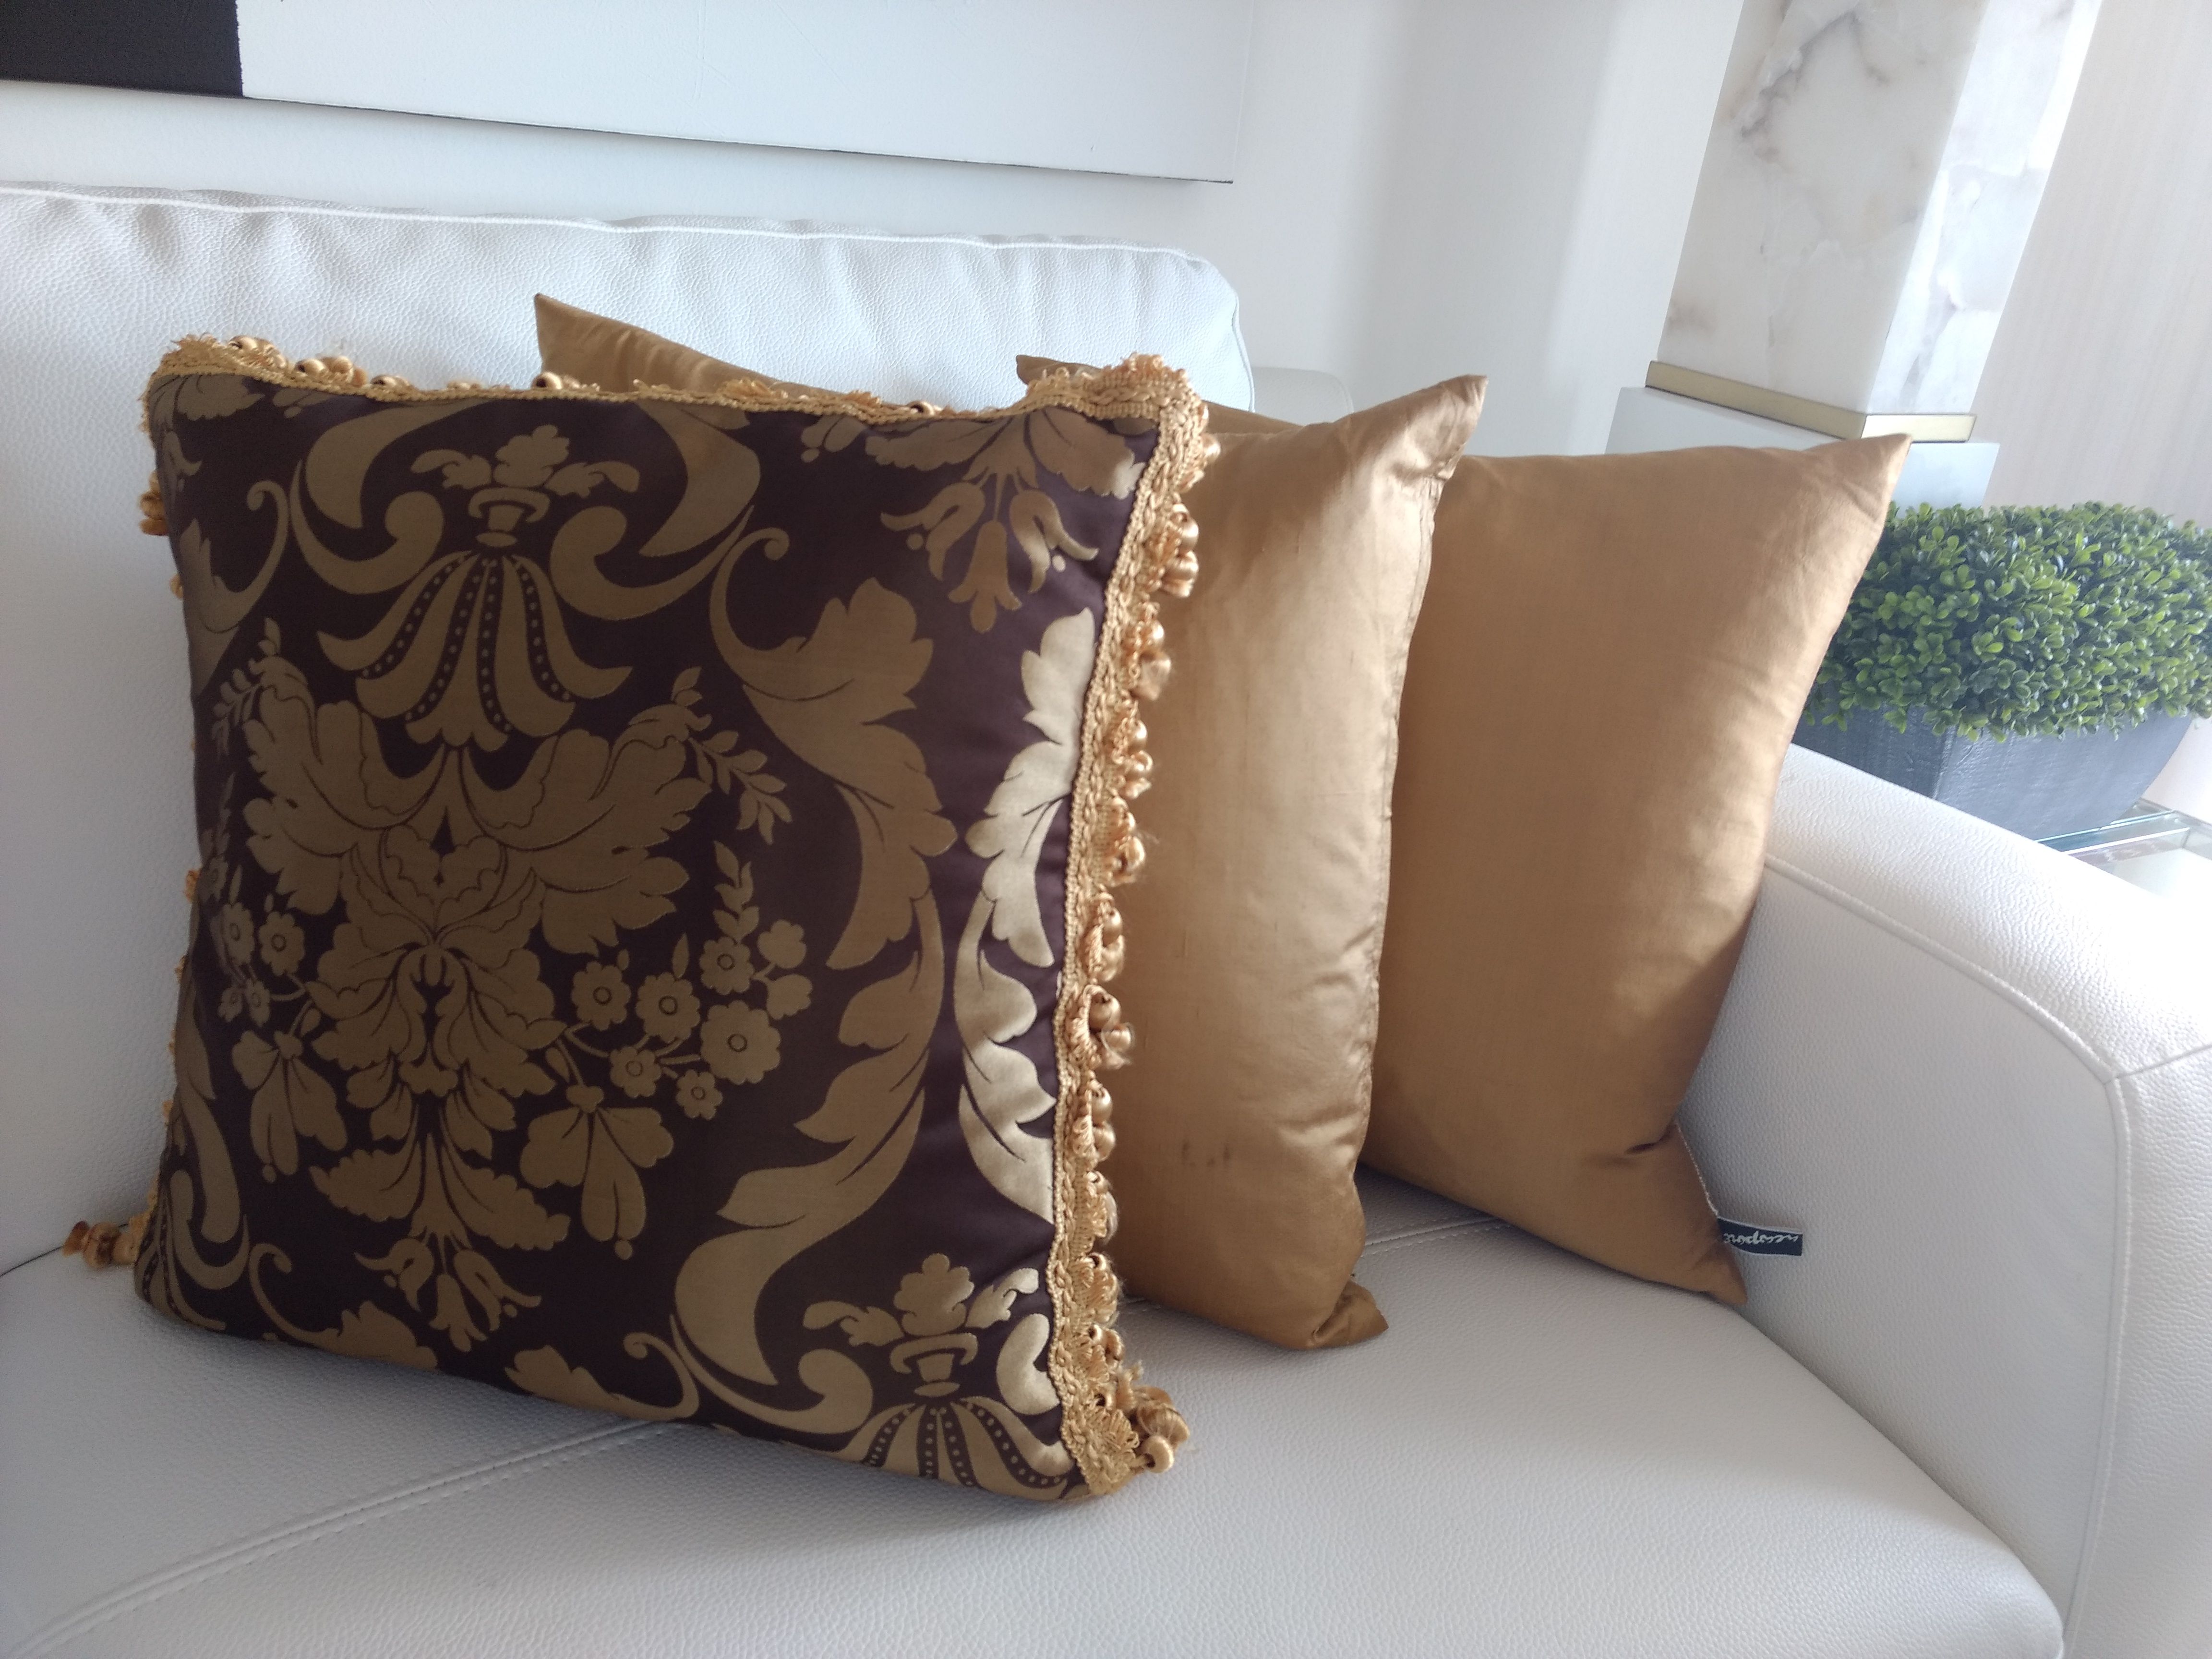 Damask Pillows$35.00 each